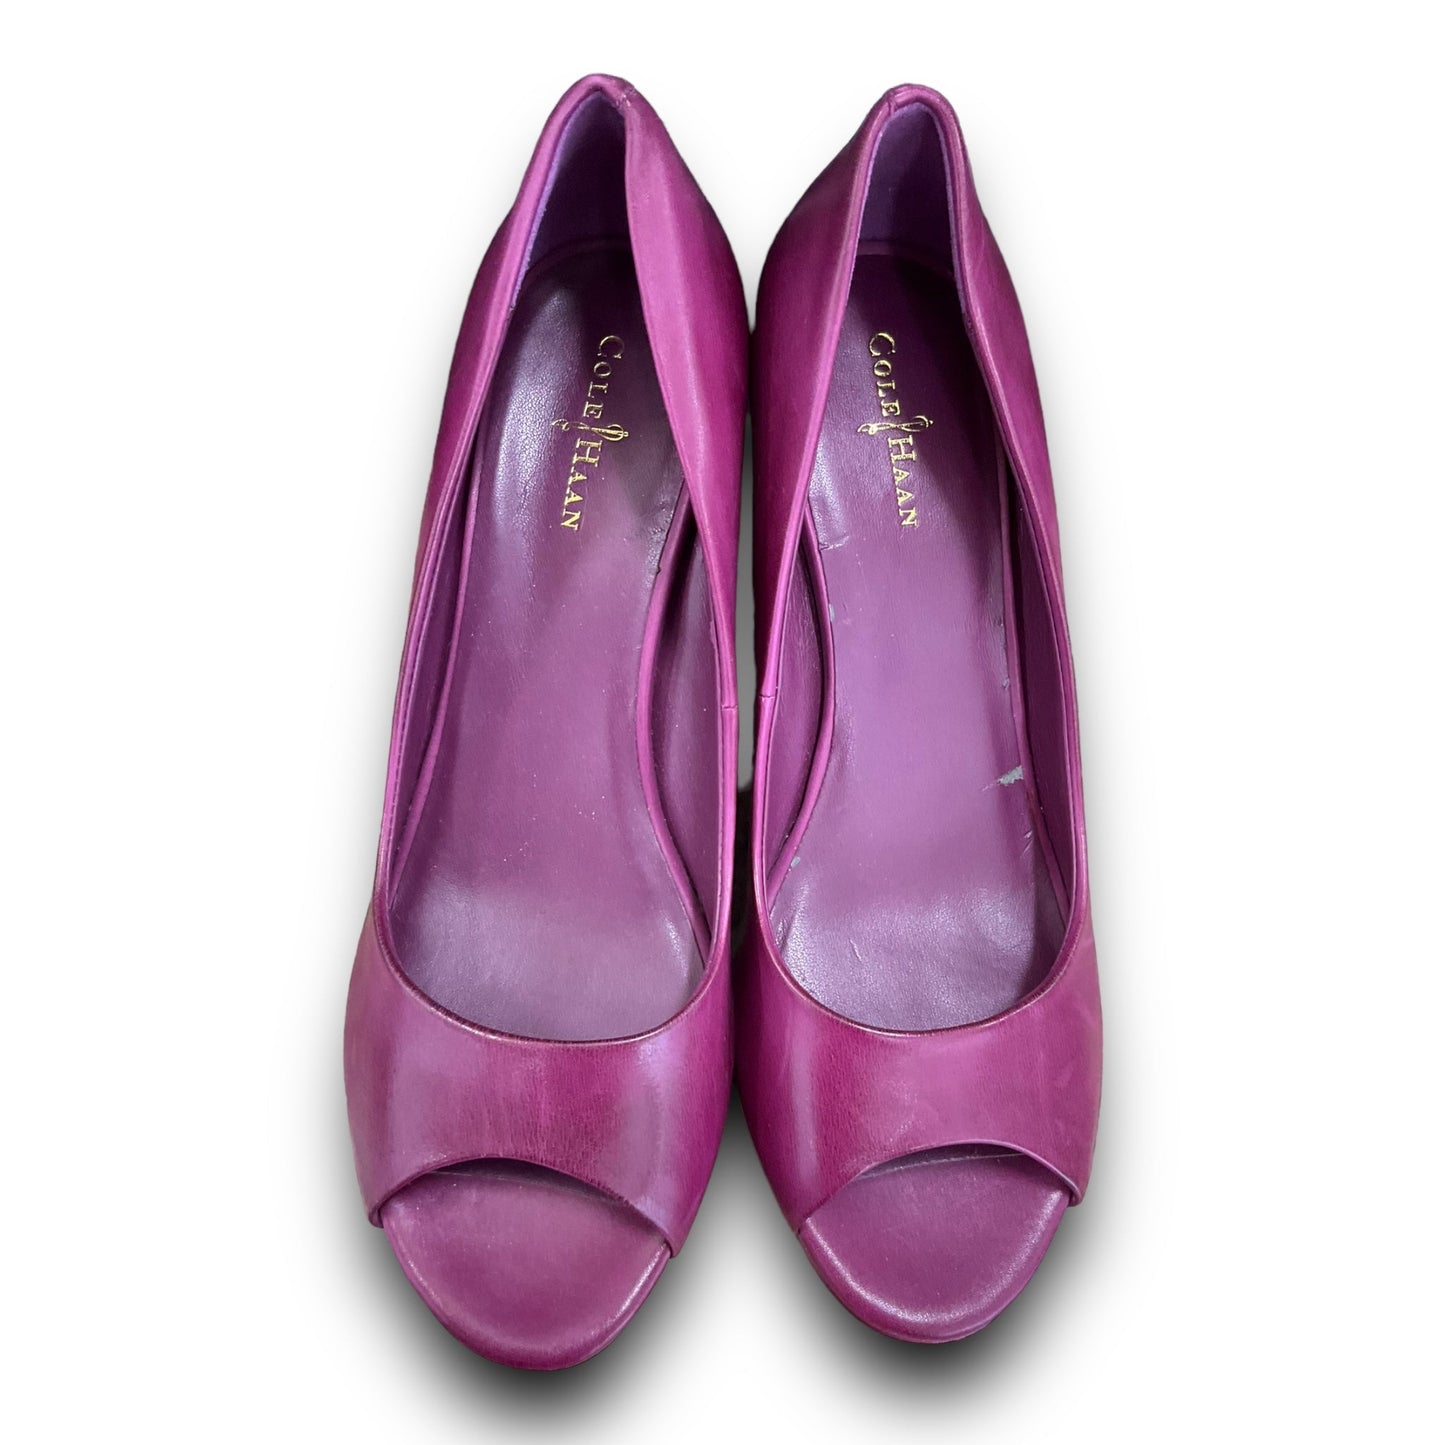 Purple Shoes Heels Wedge Cole-haan, Size 8